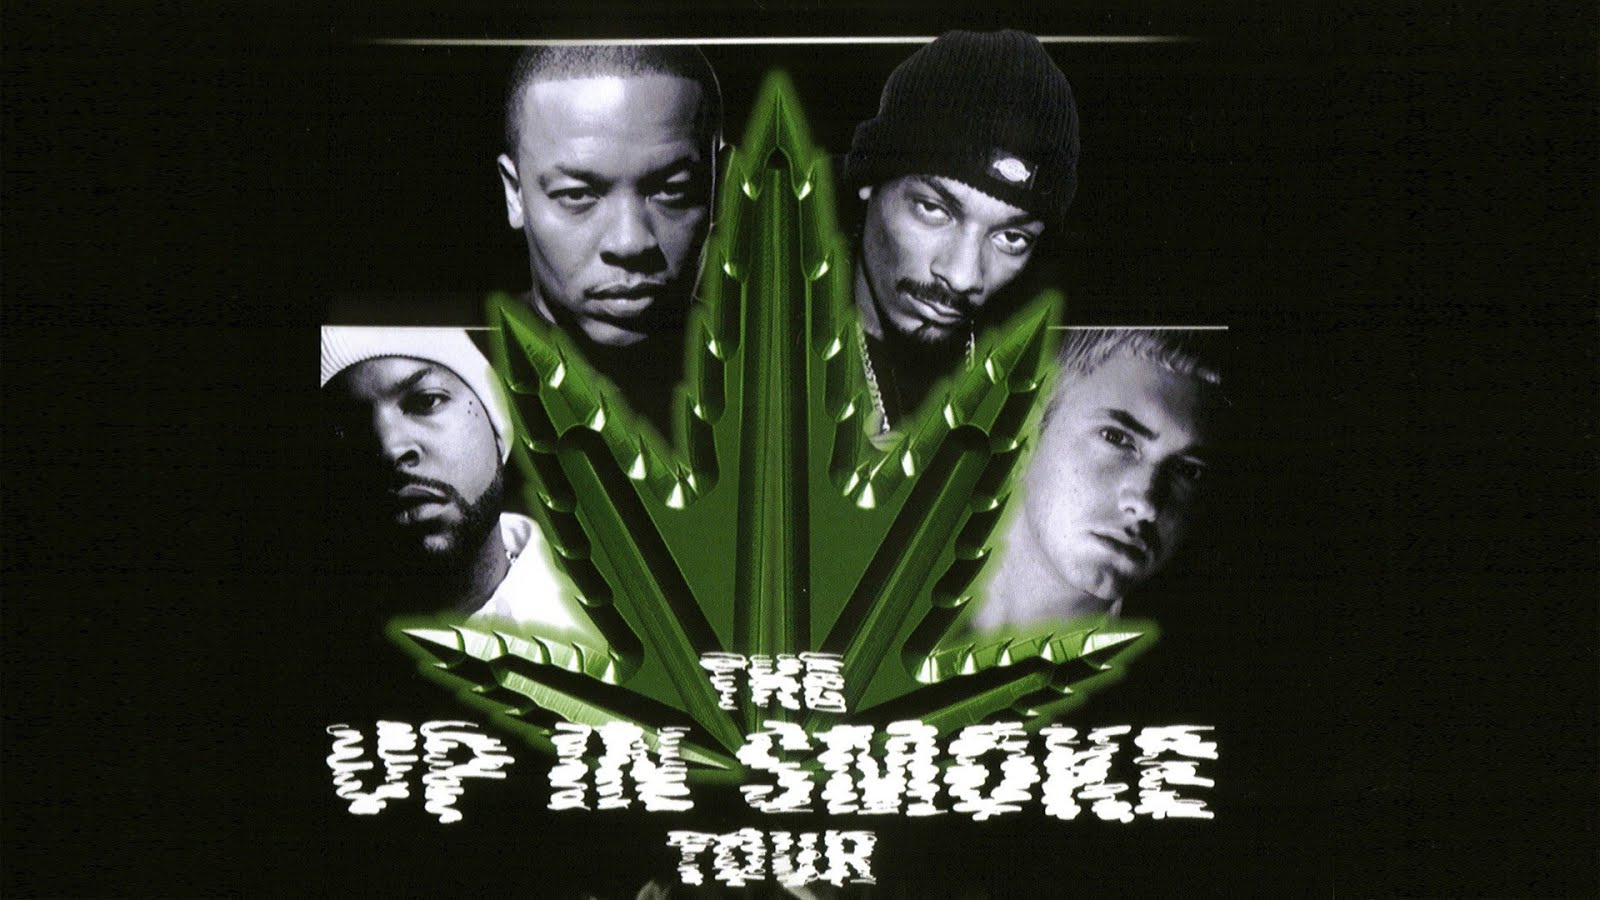 Xzibit и Eminem. Dr Dre 2002. Xzibit и 50 Cent. Dr Dre Snoop Dogg Eminem. Fly high snoop dogg eminem dr